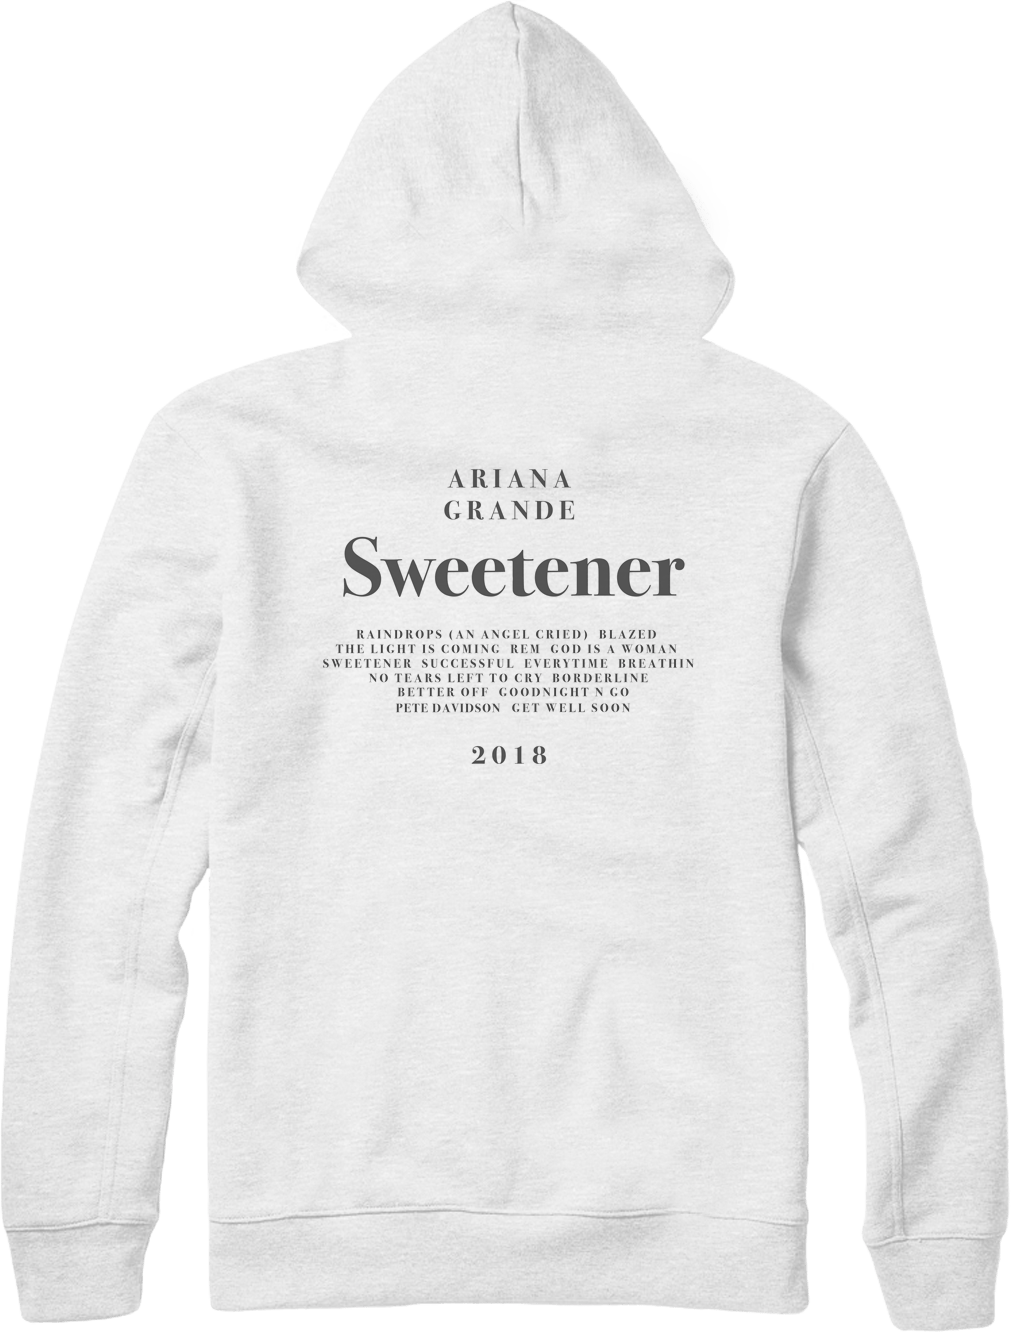 sweetener ariana grande hoodie